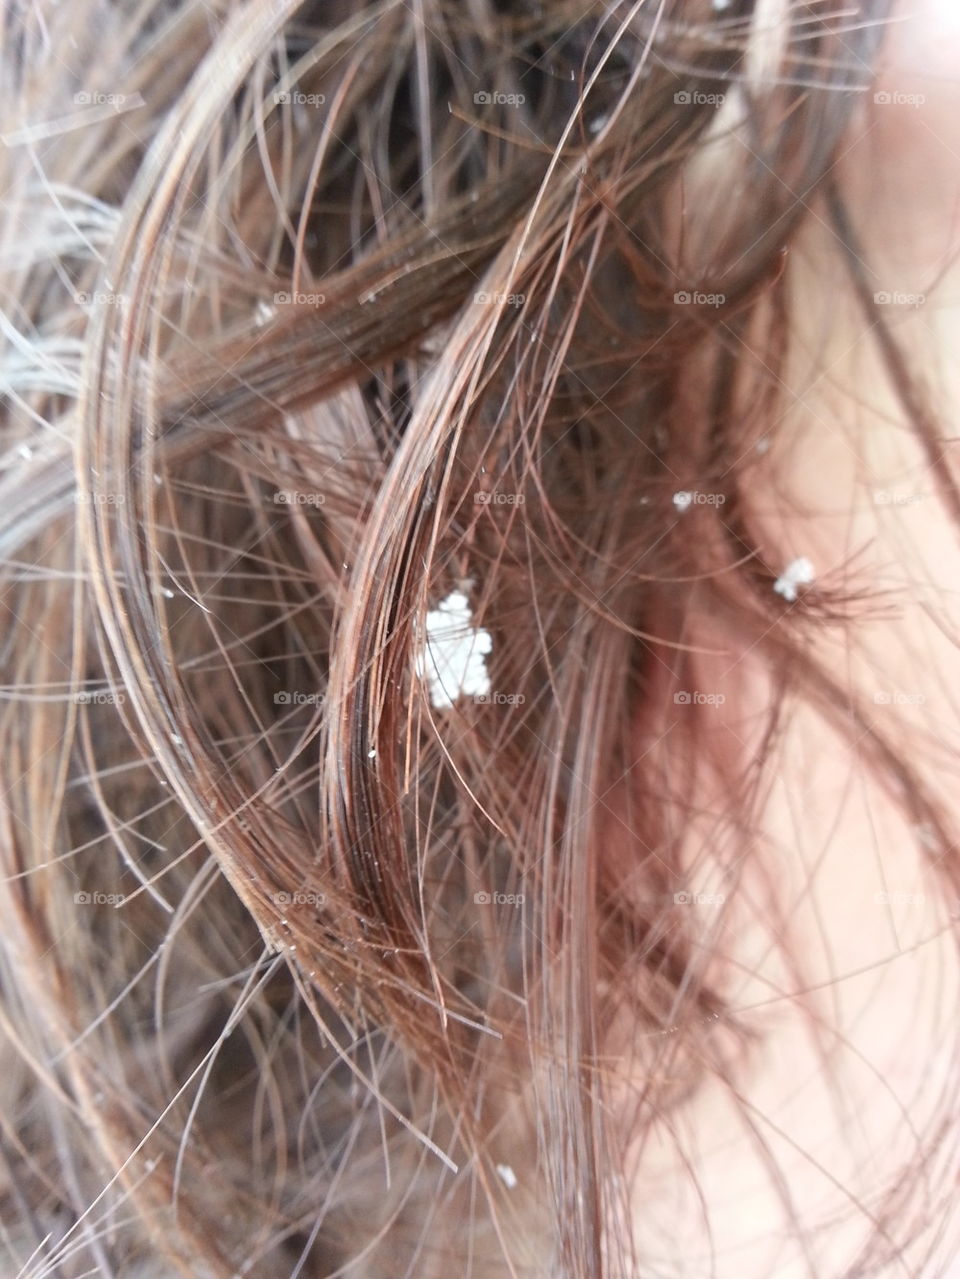 Snowflake in her hair